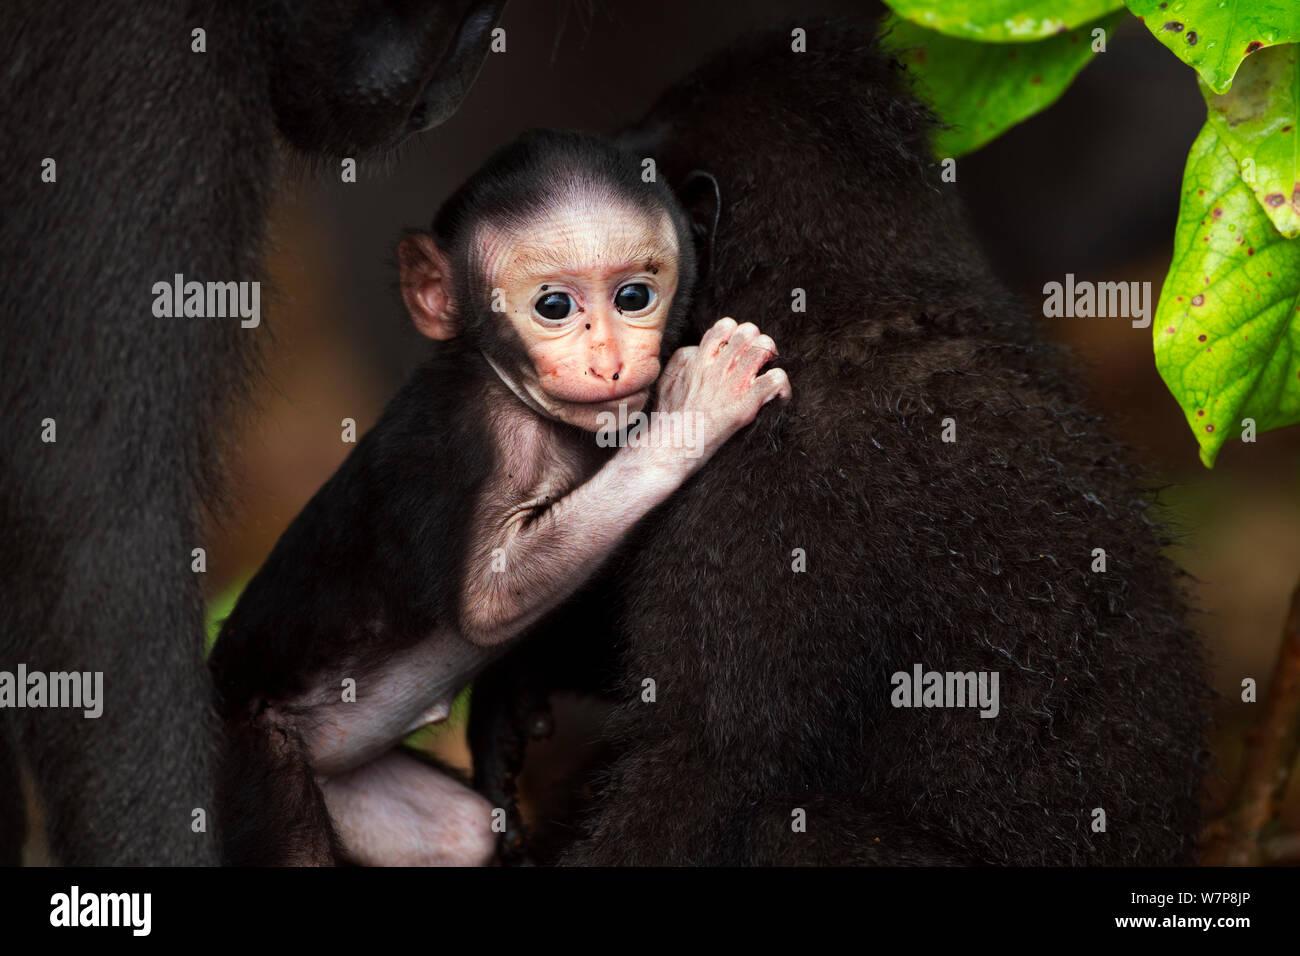 Les Célèbes / Black crested macaque (Macaca nigra) bébé de sexe féminin âgés de moins de 1 mois à jouer avec un mineur, le Parc National de Tangkoko, Sulawesi, Indonésie. Banque D'Images